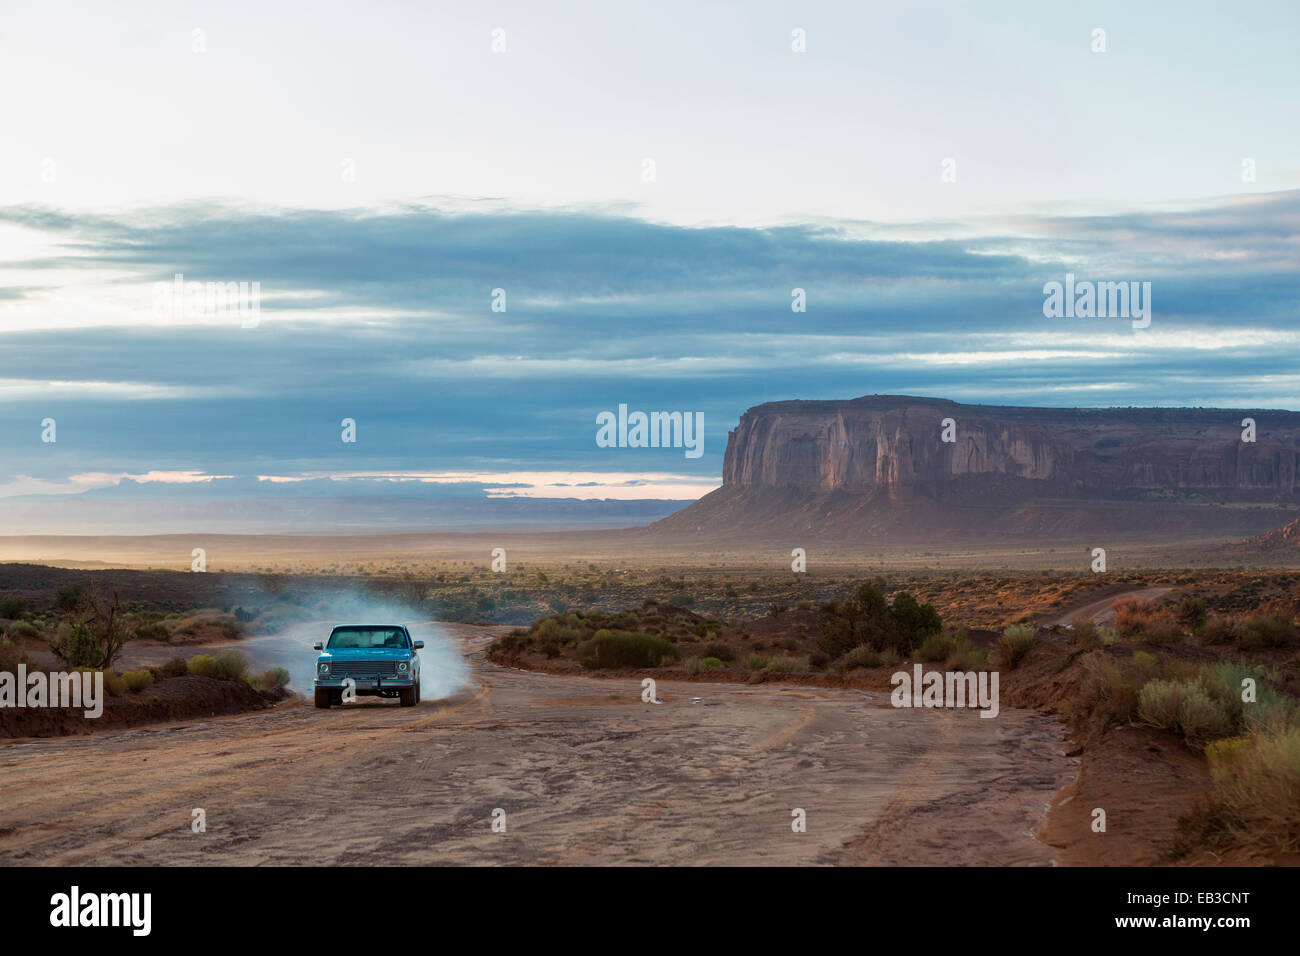 Auto fahren auf unbefestigten Straße in der Wüste, Monument Valley, Utah, Vereinigte Staaten von Amerika Stockfoto